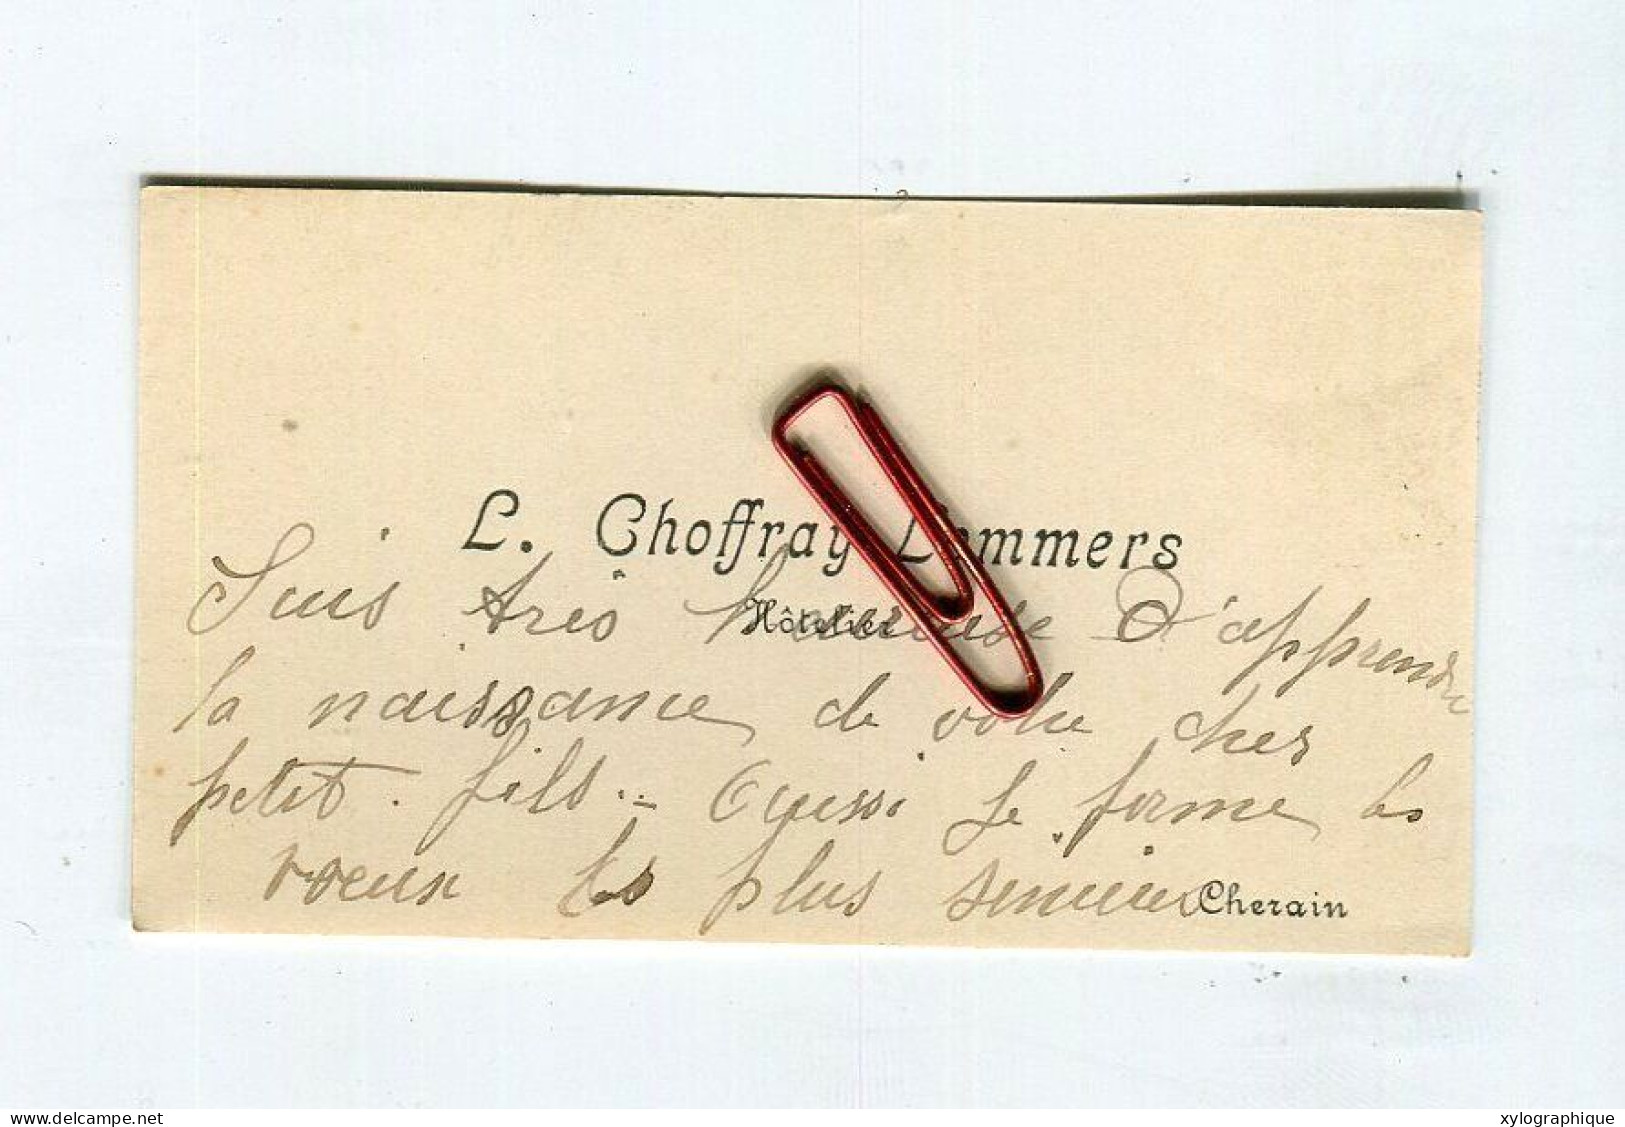 CHERAIN (Gouvy) - Carte De Visite Ca. 1930 Voir Verso L. Choffray Lommers, Hôtelier, à Famille Gérardy Warland - Visitenkarten